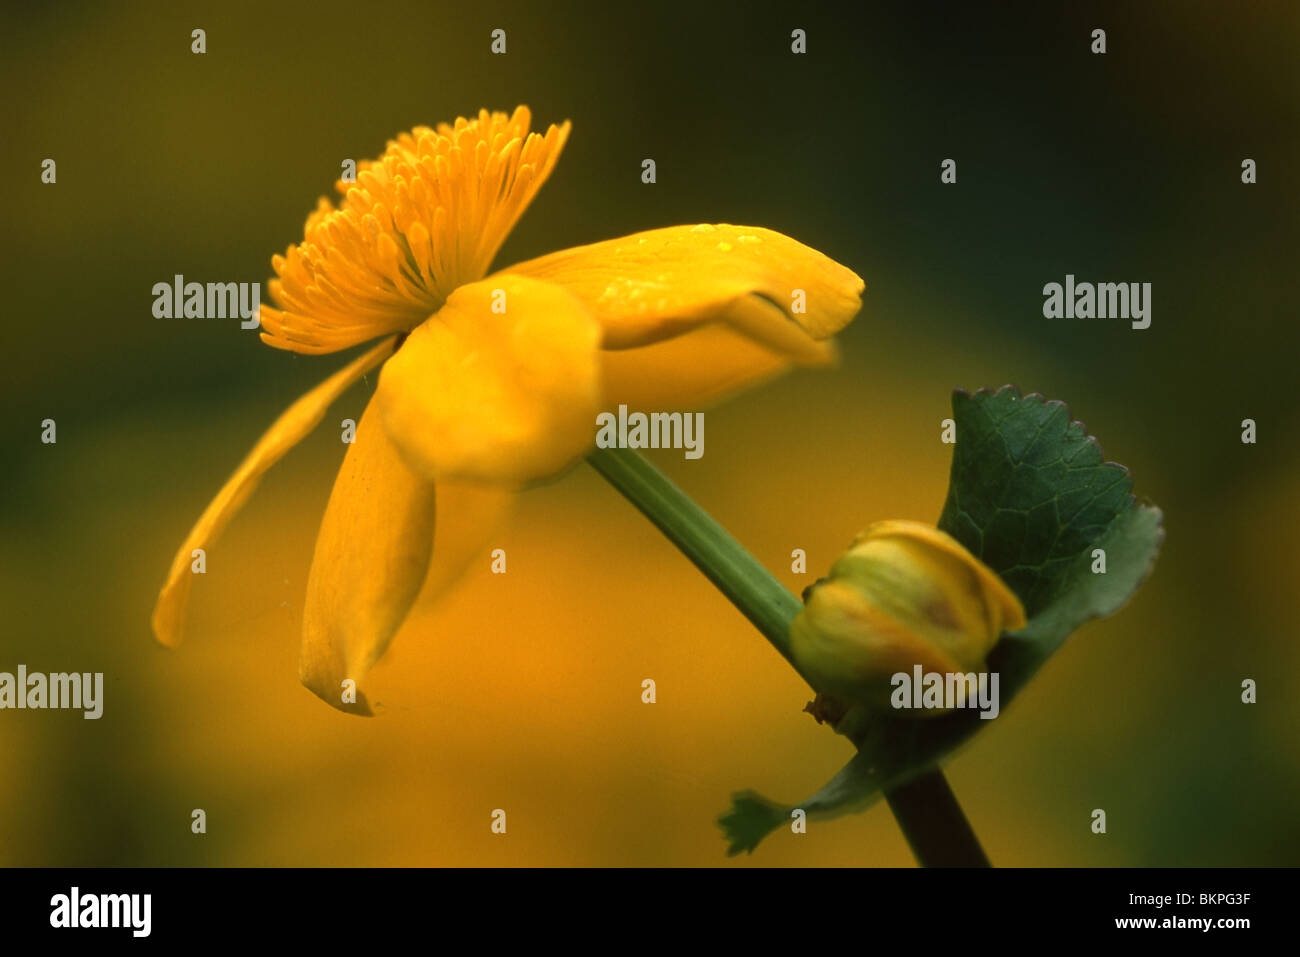 Stengel en gele bloem dotterbloem vanaf zijkant met gele achtergrond; Stalk and yellow flower of Marsh Marigold sidewards with yellow background Stock Photo